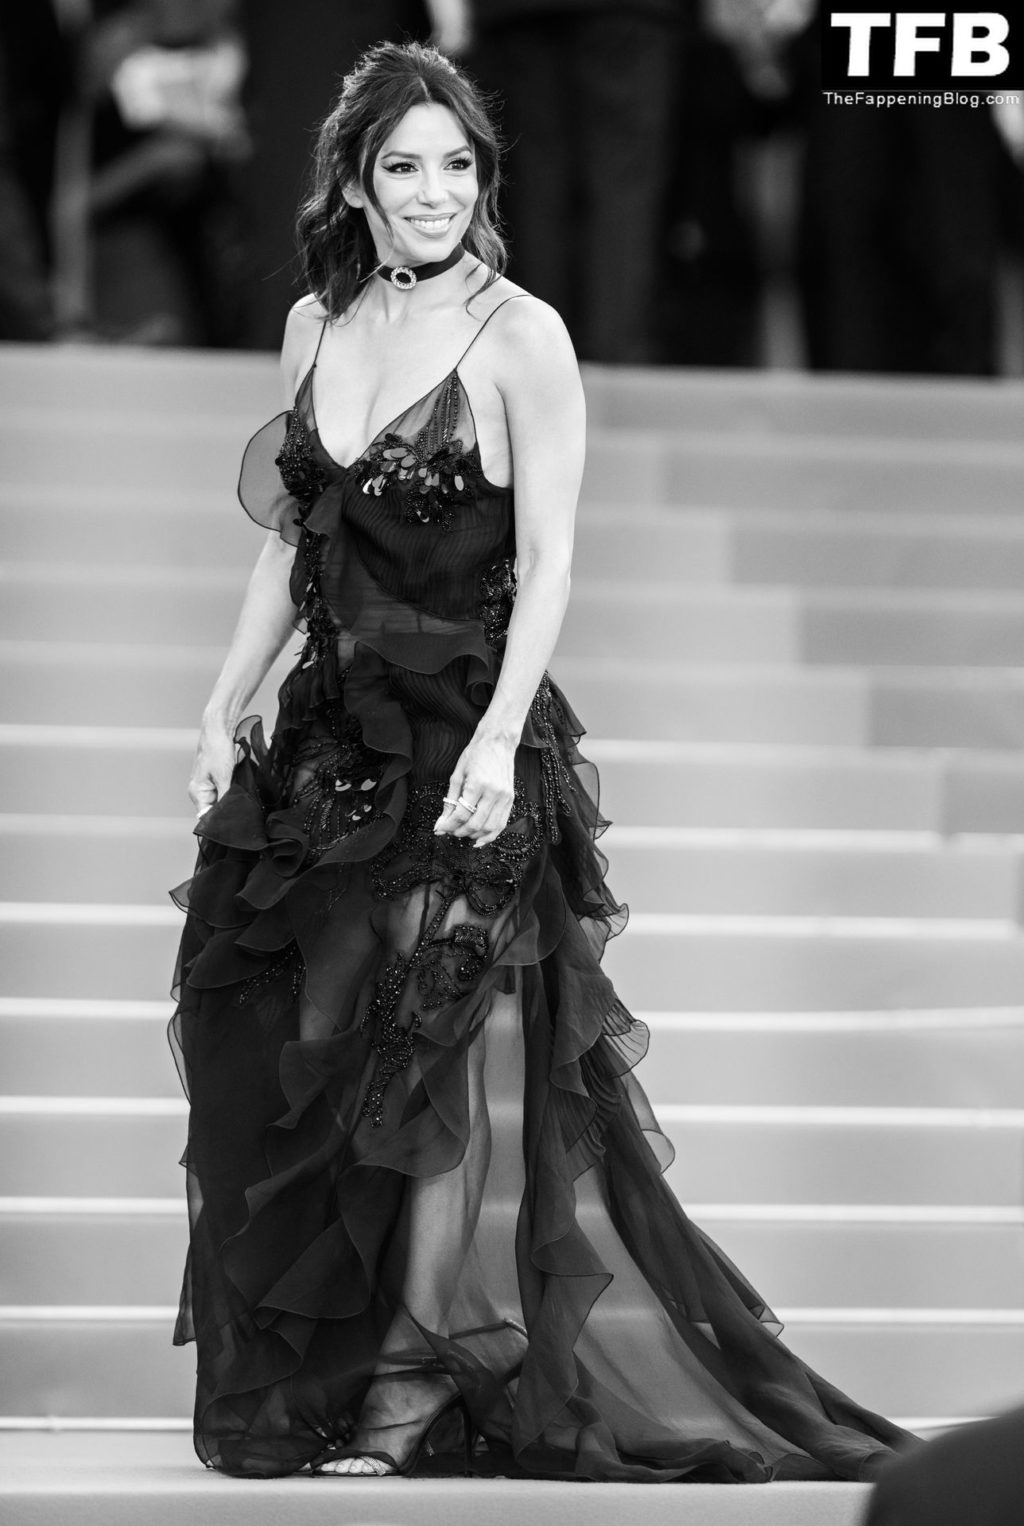 Eva Longoria Sexy The Fappening Blog 101 1024x1526 - Eva Longoria Looks Beautiful at the 75th Annual Cannes Film Festival (150 Photos)